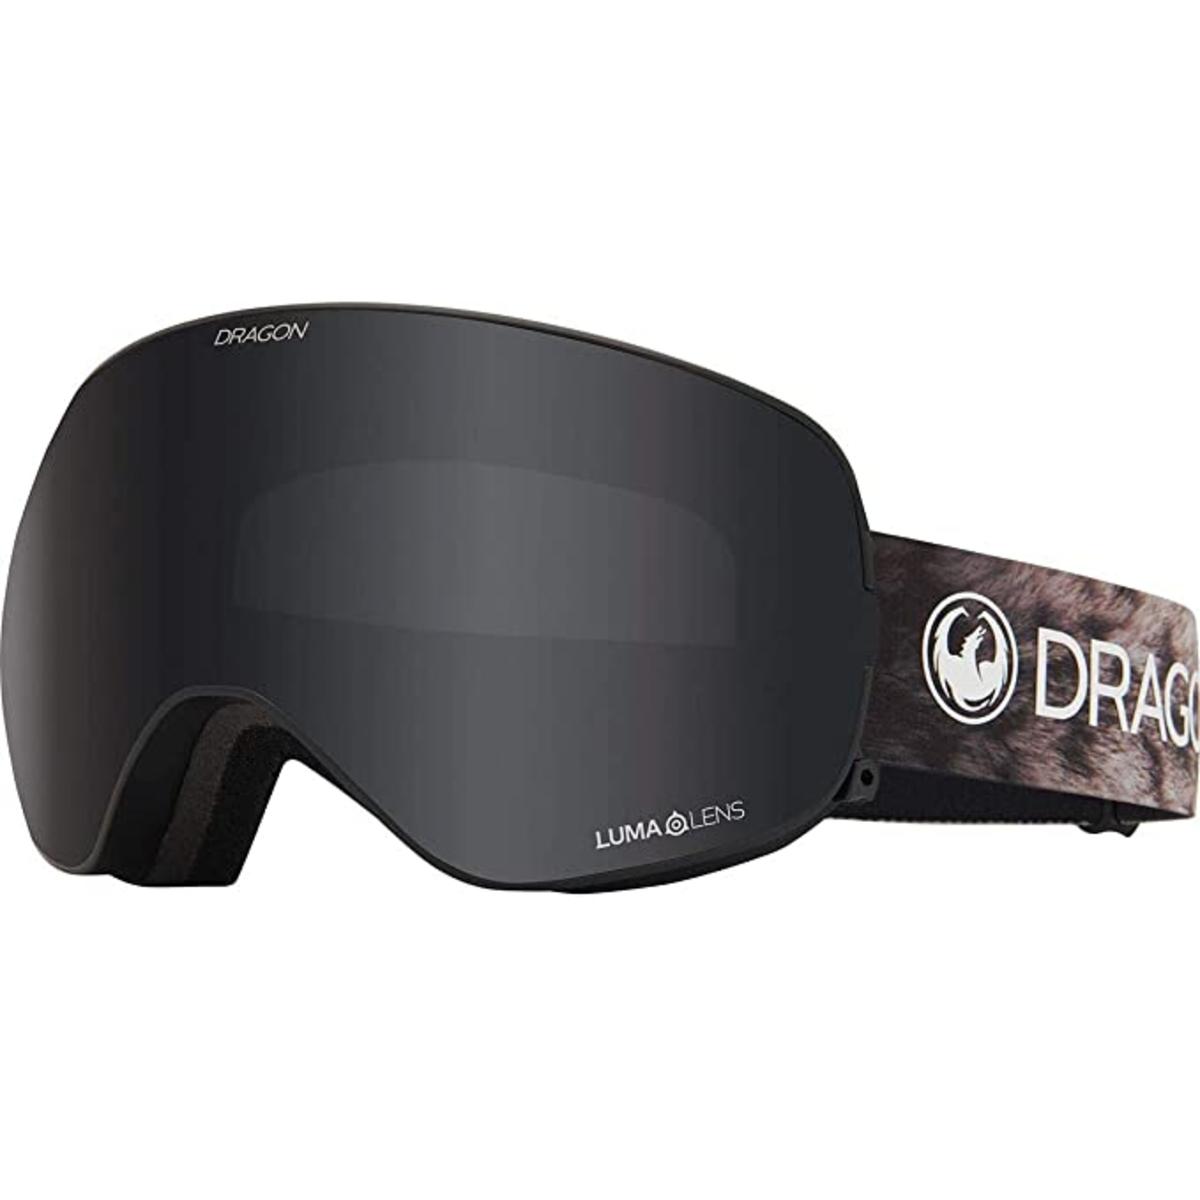 Dragon X2s Goggles